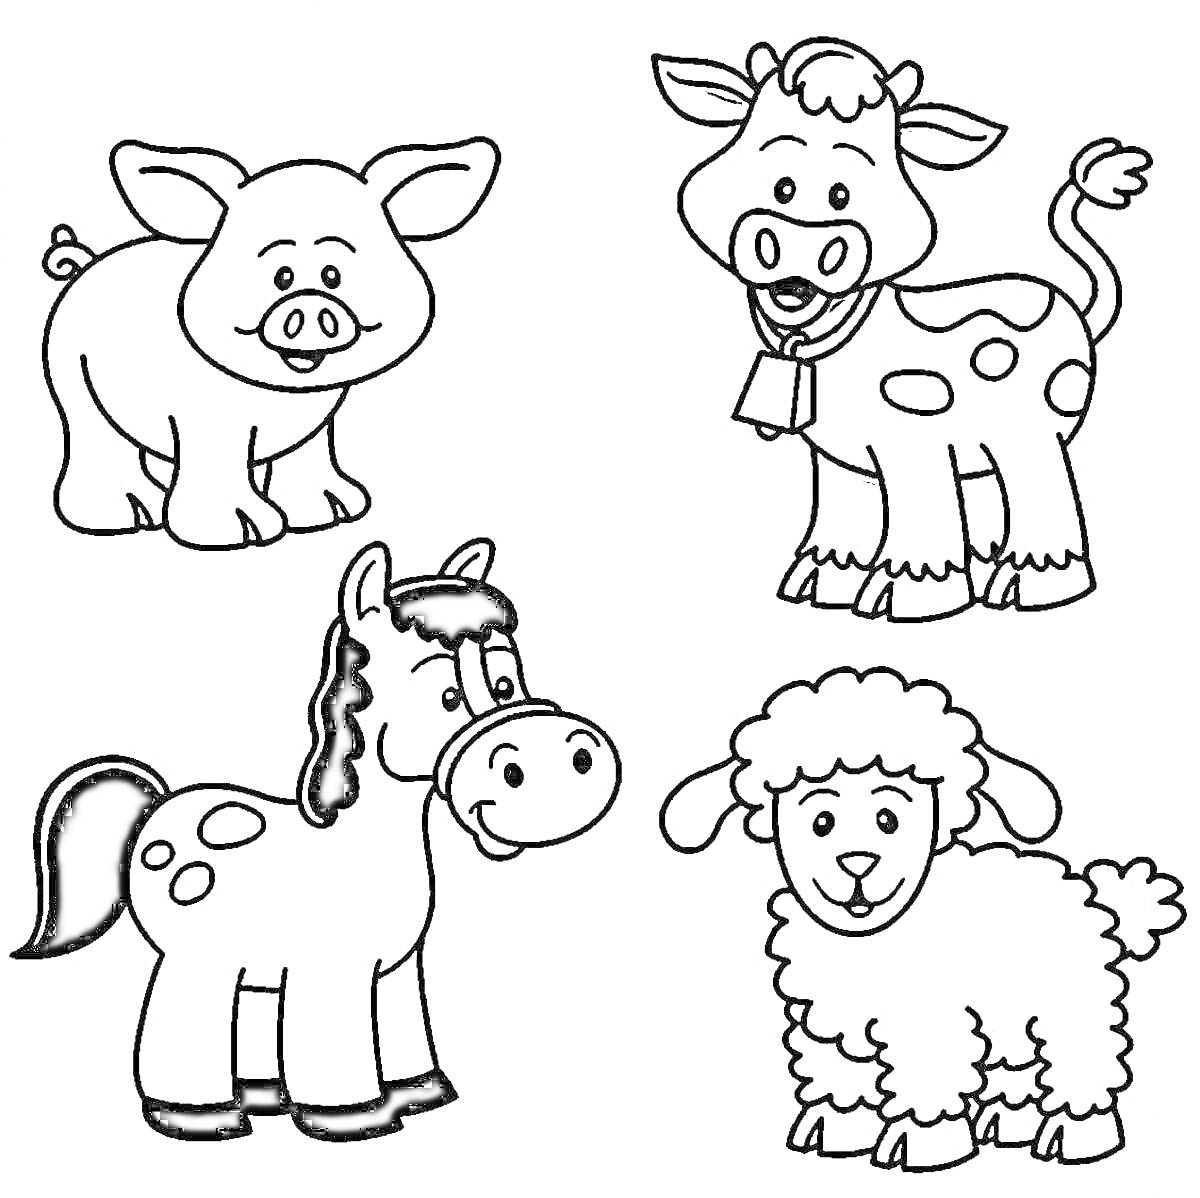 Свинья, корова с колокольчиком на шее, лошадь с пятнами, овца с кудрявой шерстью